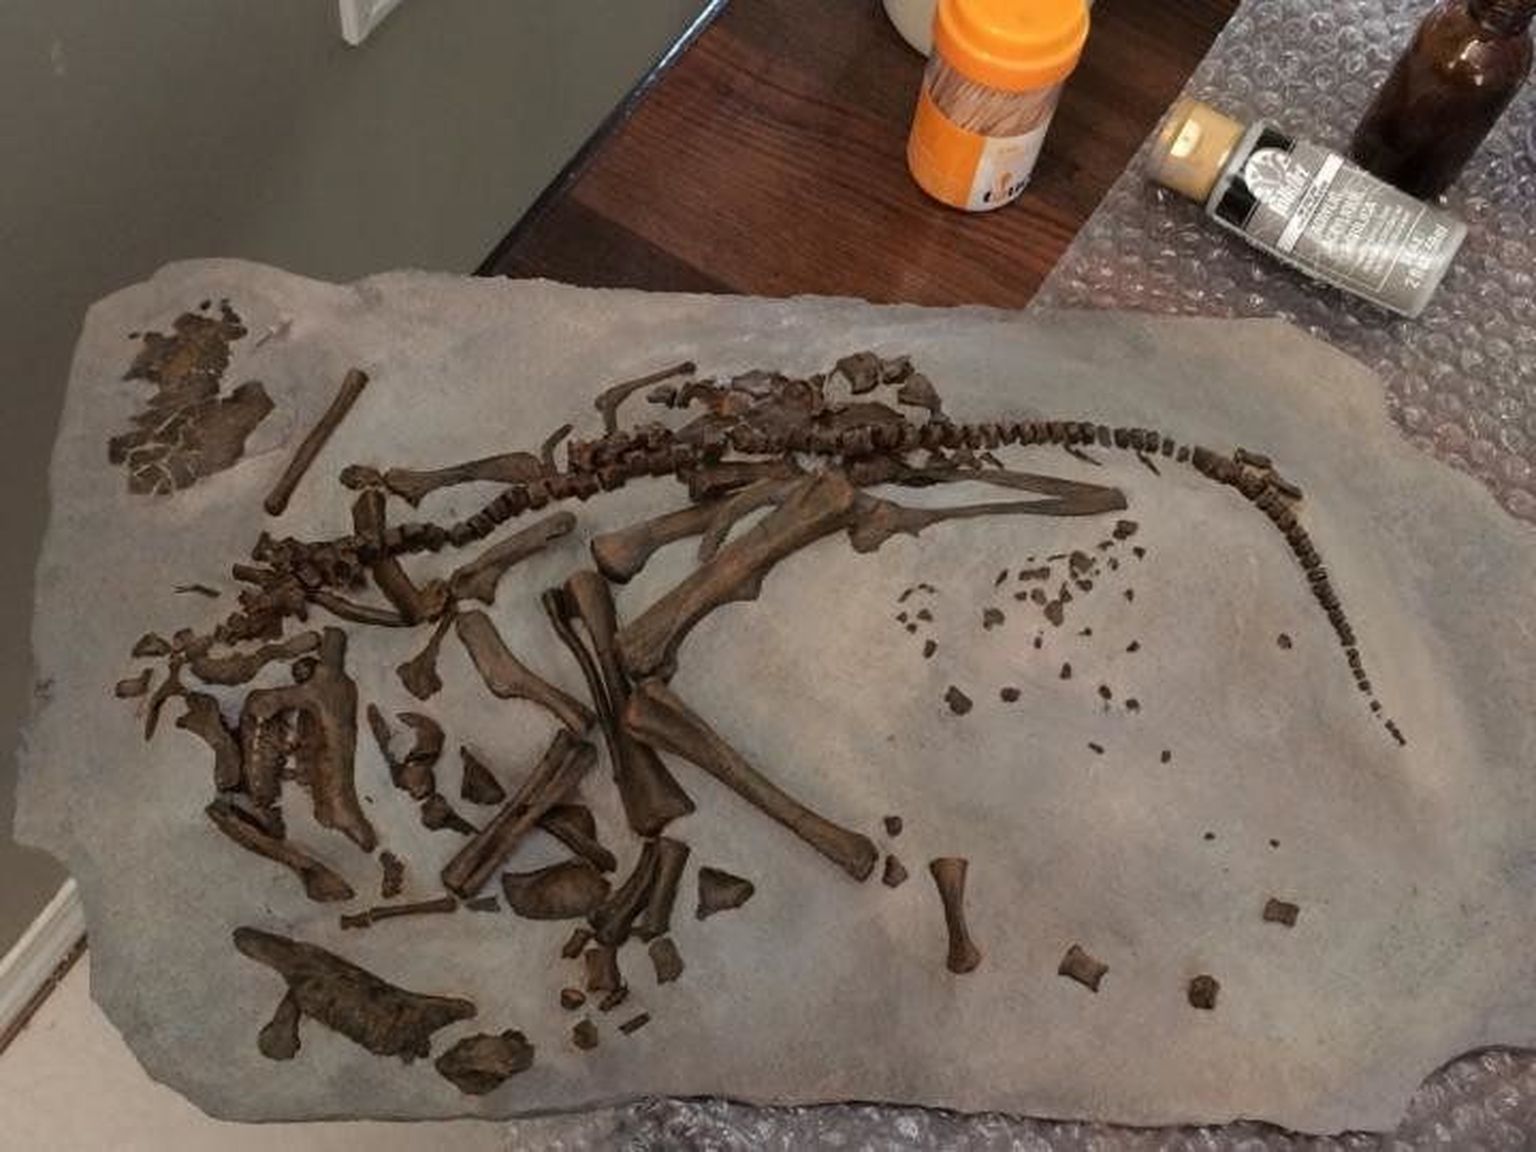 Hypacrosauruse fossiliseerunud embrüo, mille alusel tehti kindlaks dinosauruste haudeperioodi pikkus.